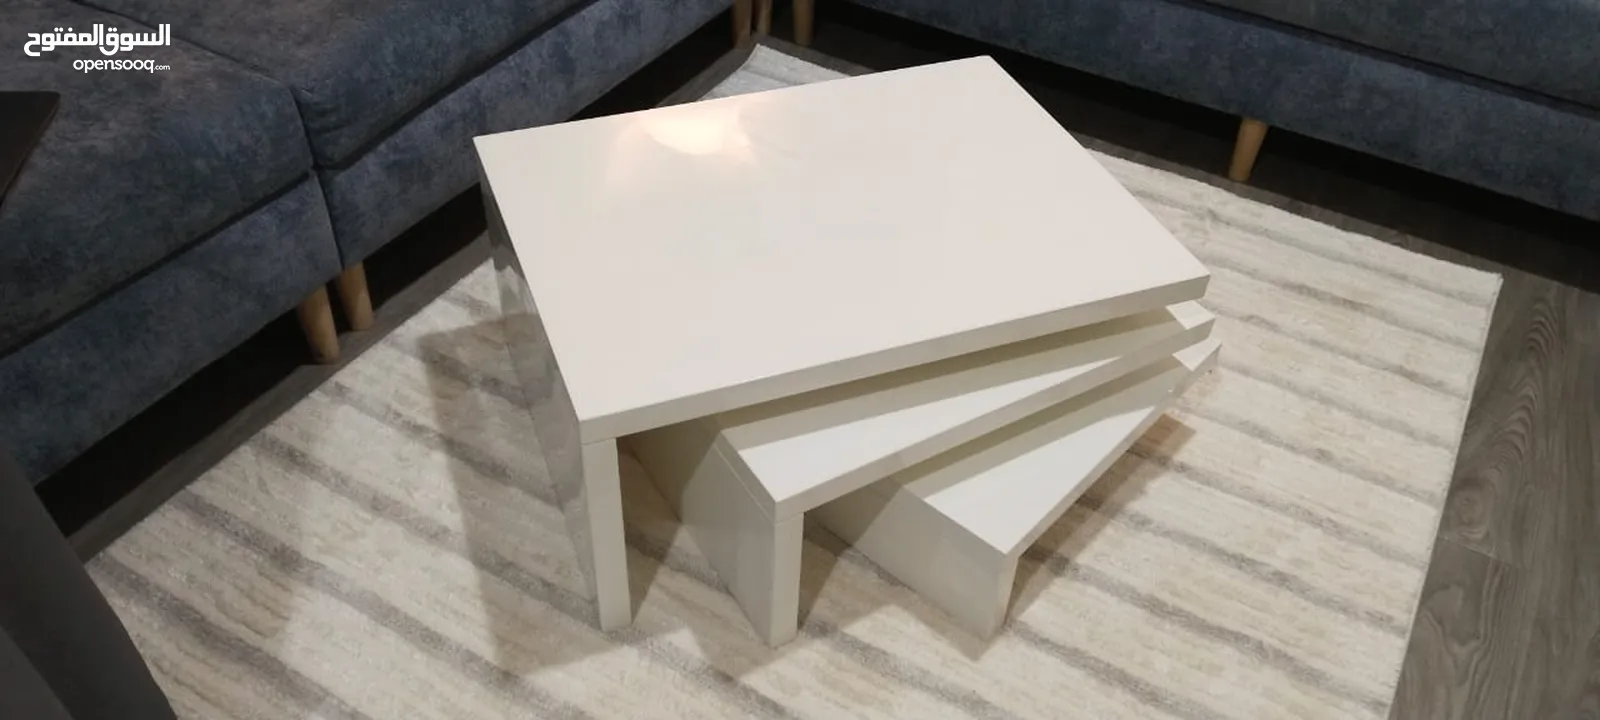 اثاث مشكل  كرسي  طاولة